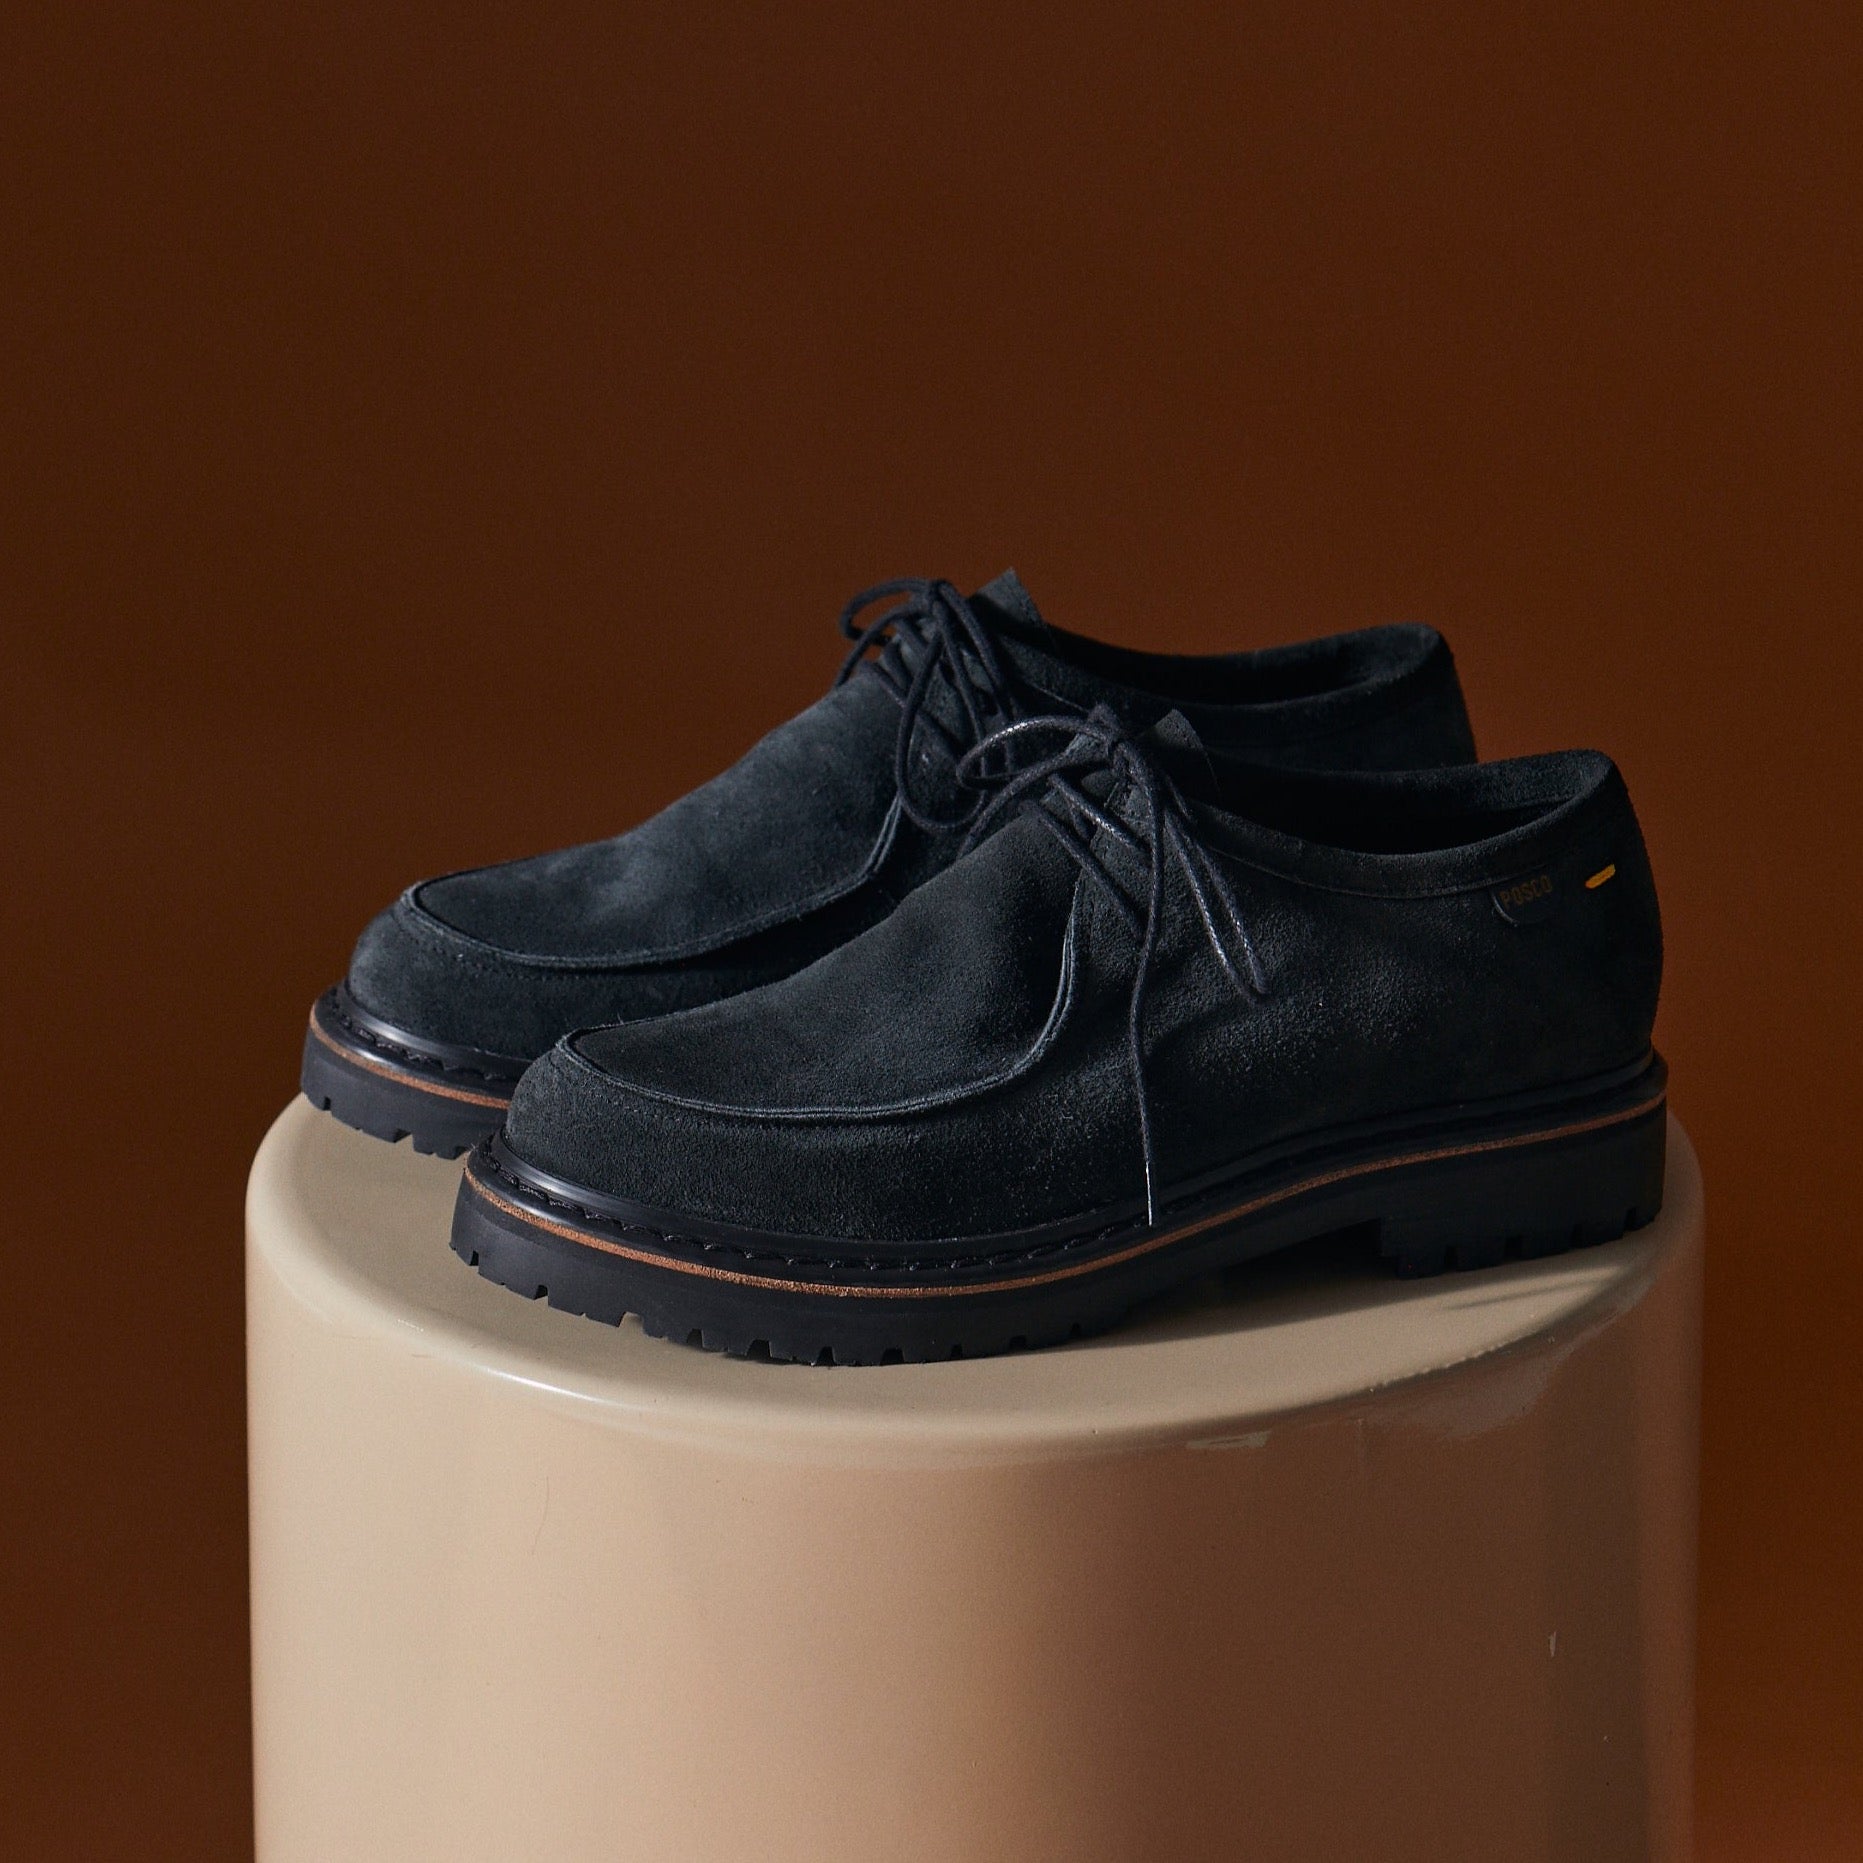 Wanabe 2.0 Gamuza Negra - Un zapato de oficio para todos los días. Funcionan para una reunión de trabajo con un jean o para salir con amigos. Pensado para los arquitectos que van de obra en obra.